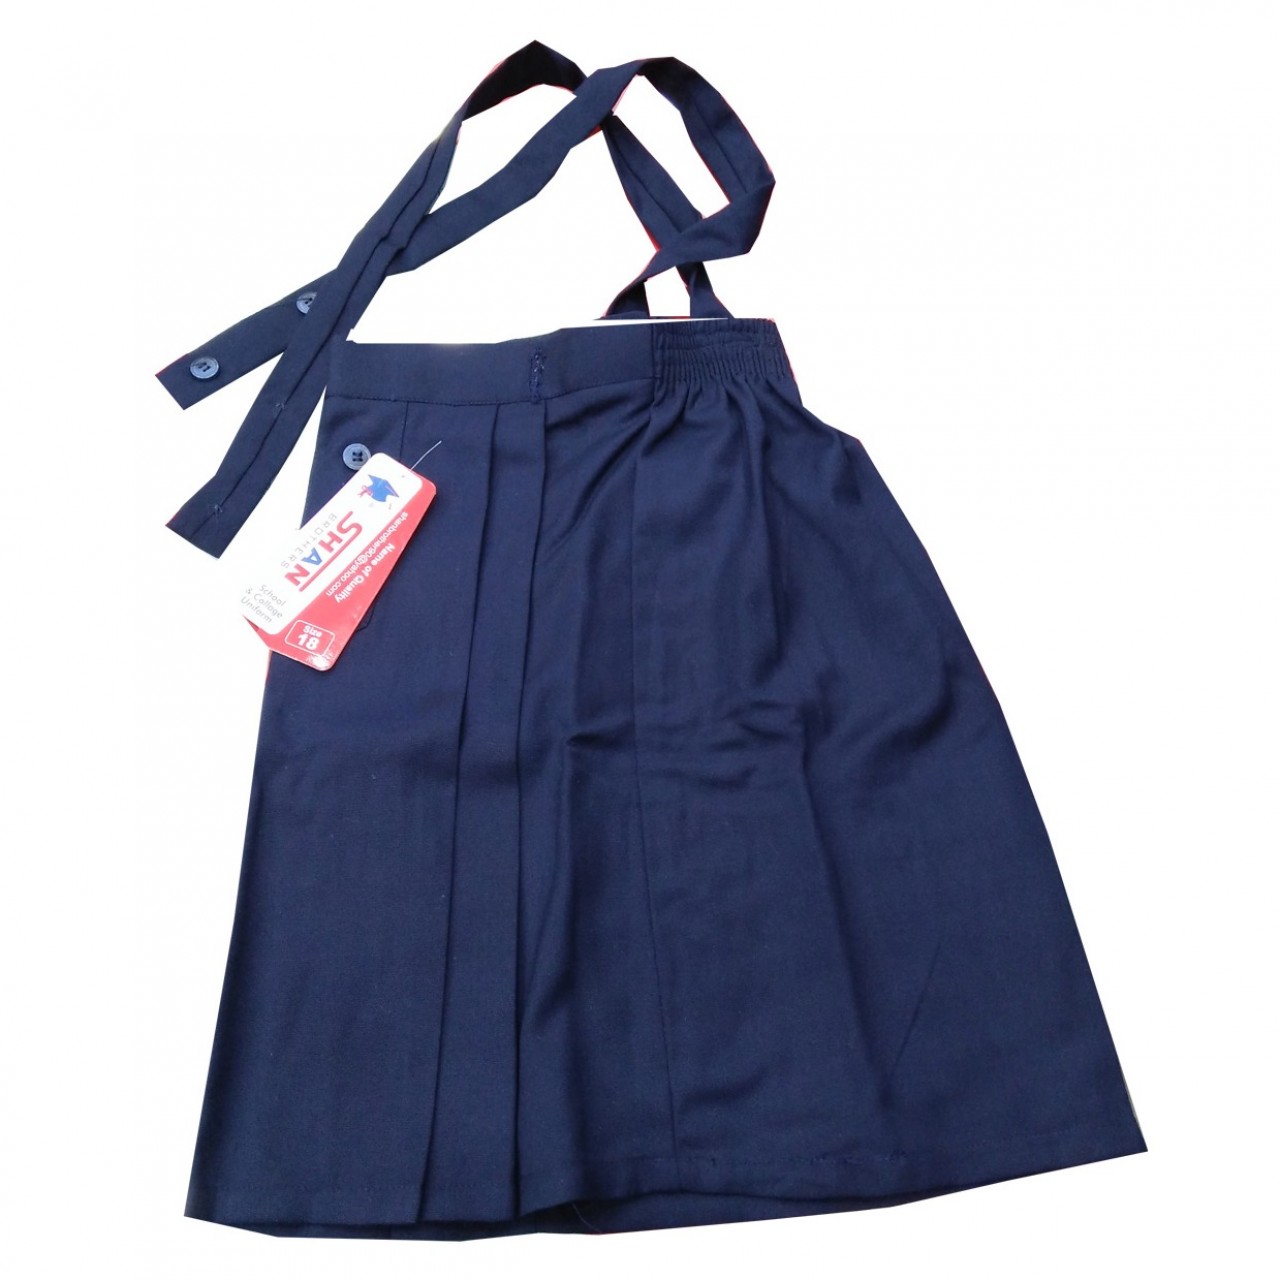 Unique School Uniform Skirt For Girls- Blue